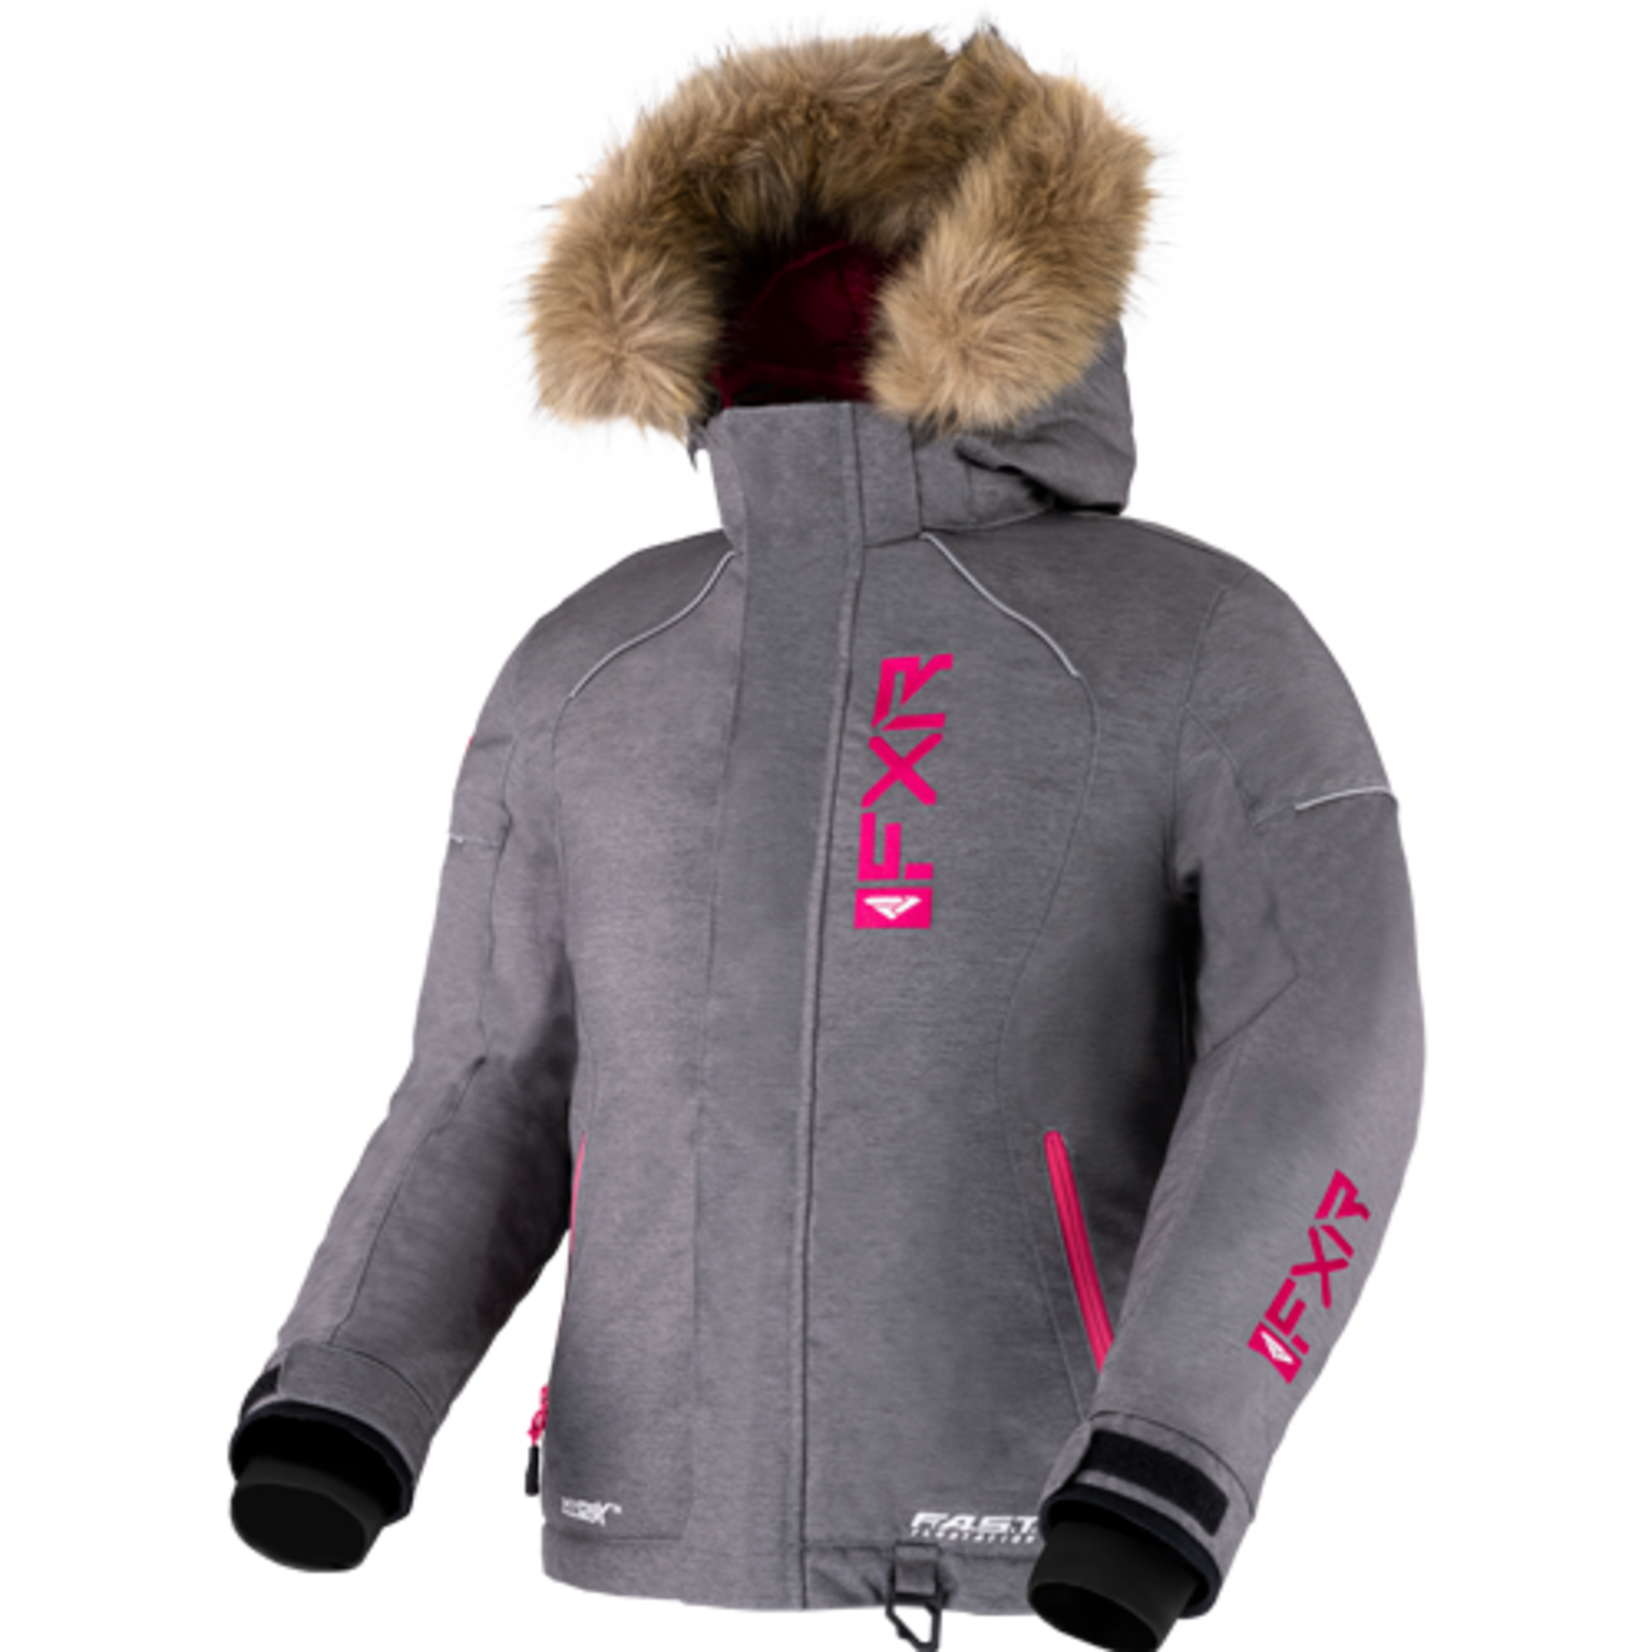 FXR FXR Winter Jacket, Fresh, Youth, Girls